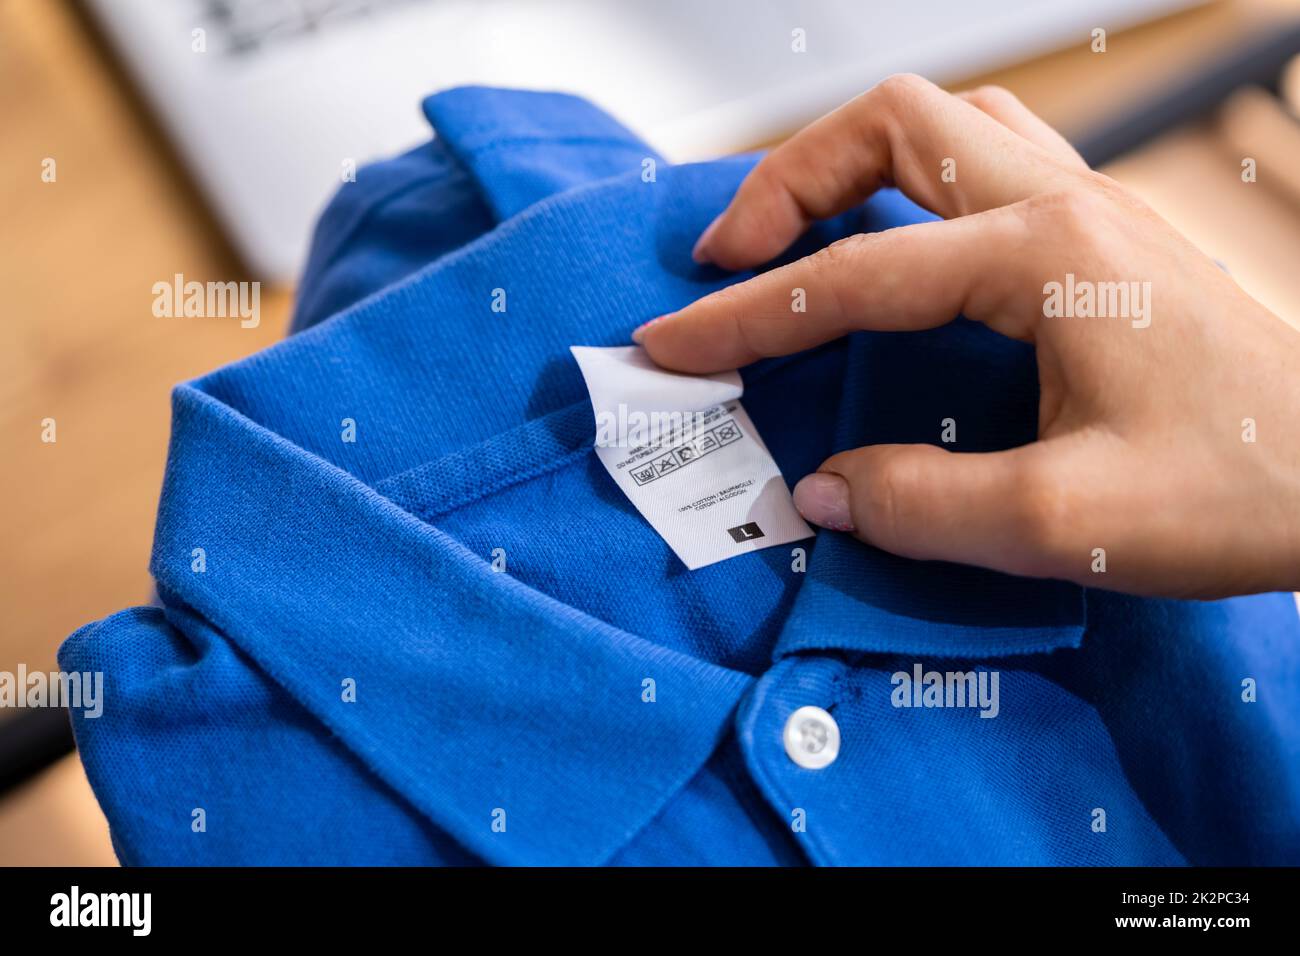 Shirt label close up -Fotos Alamy – Auflösung hoher -Bildmaterial in und